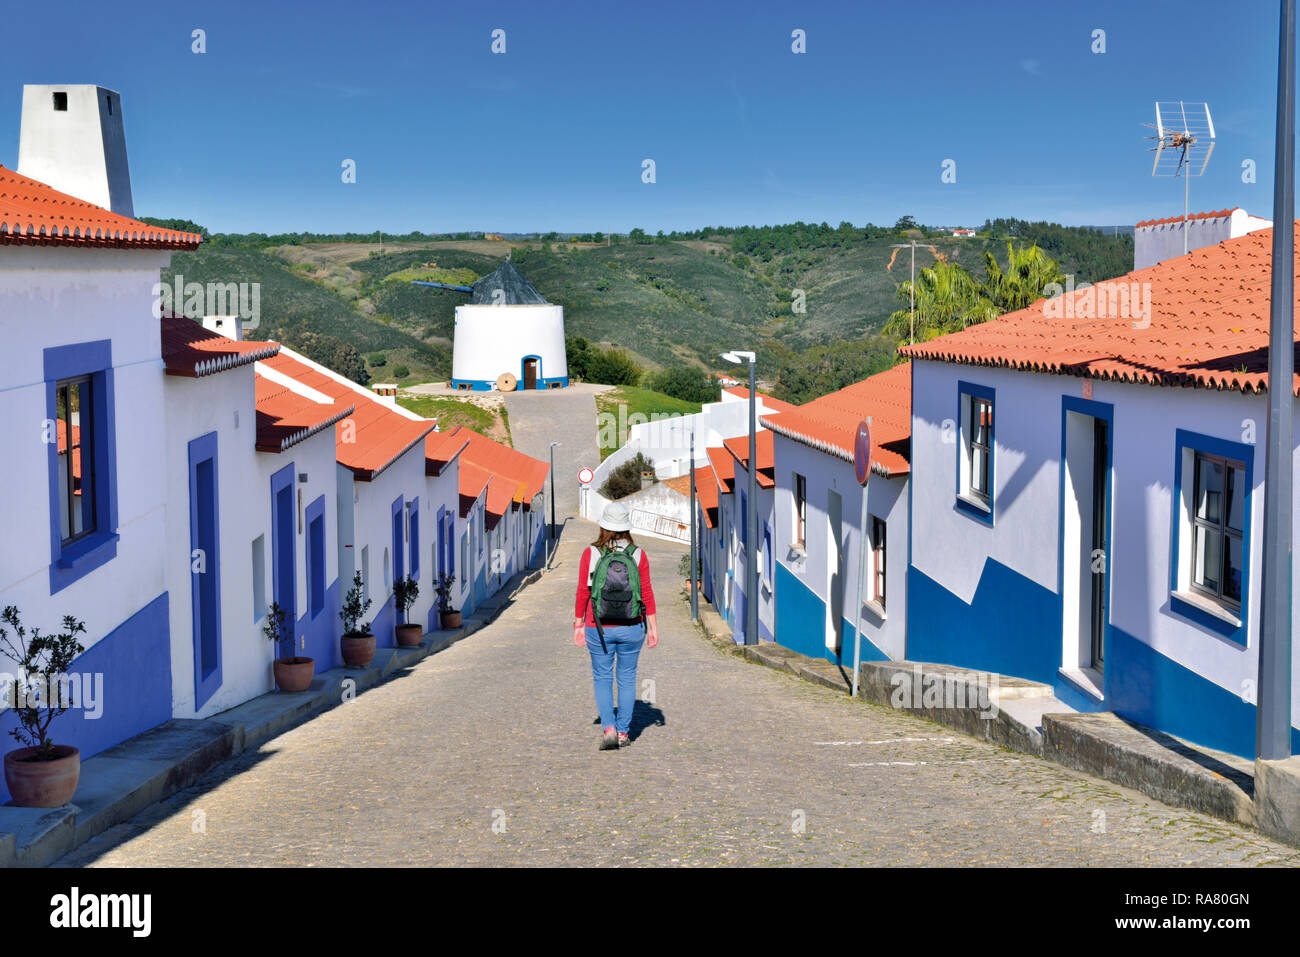 Woman walking along petite rue entre blanc, de maisons alignées avec ornements bleu Banque D'Images